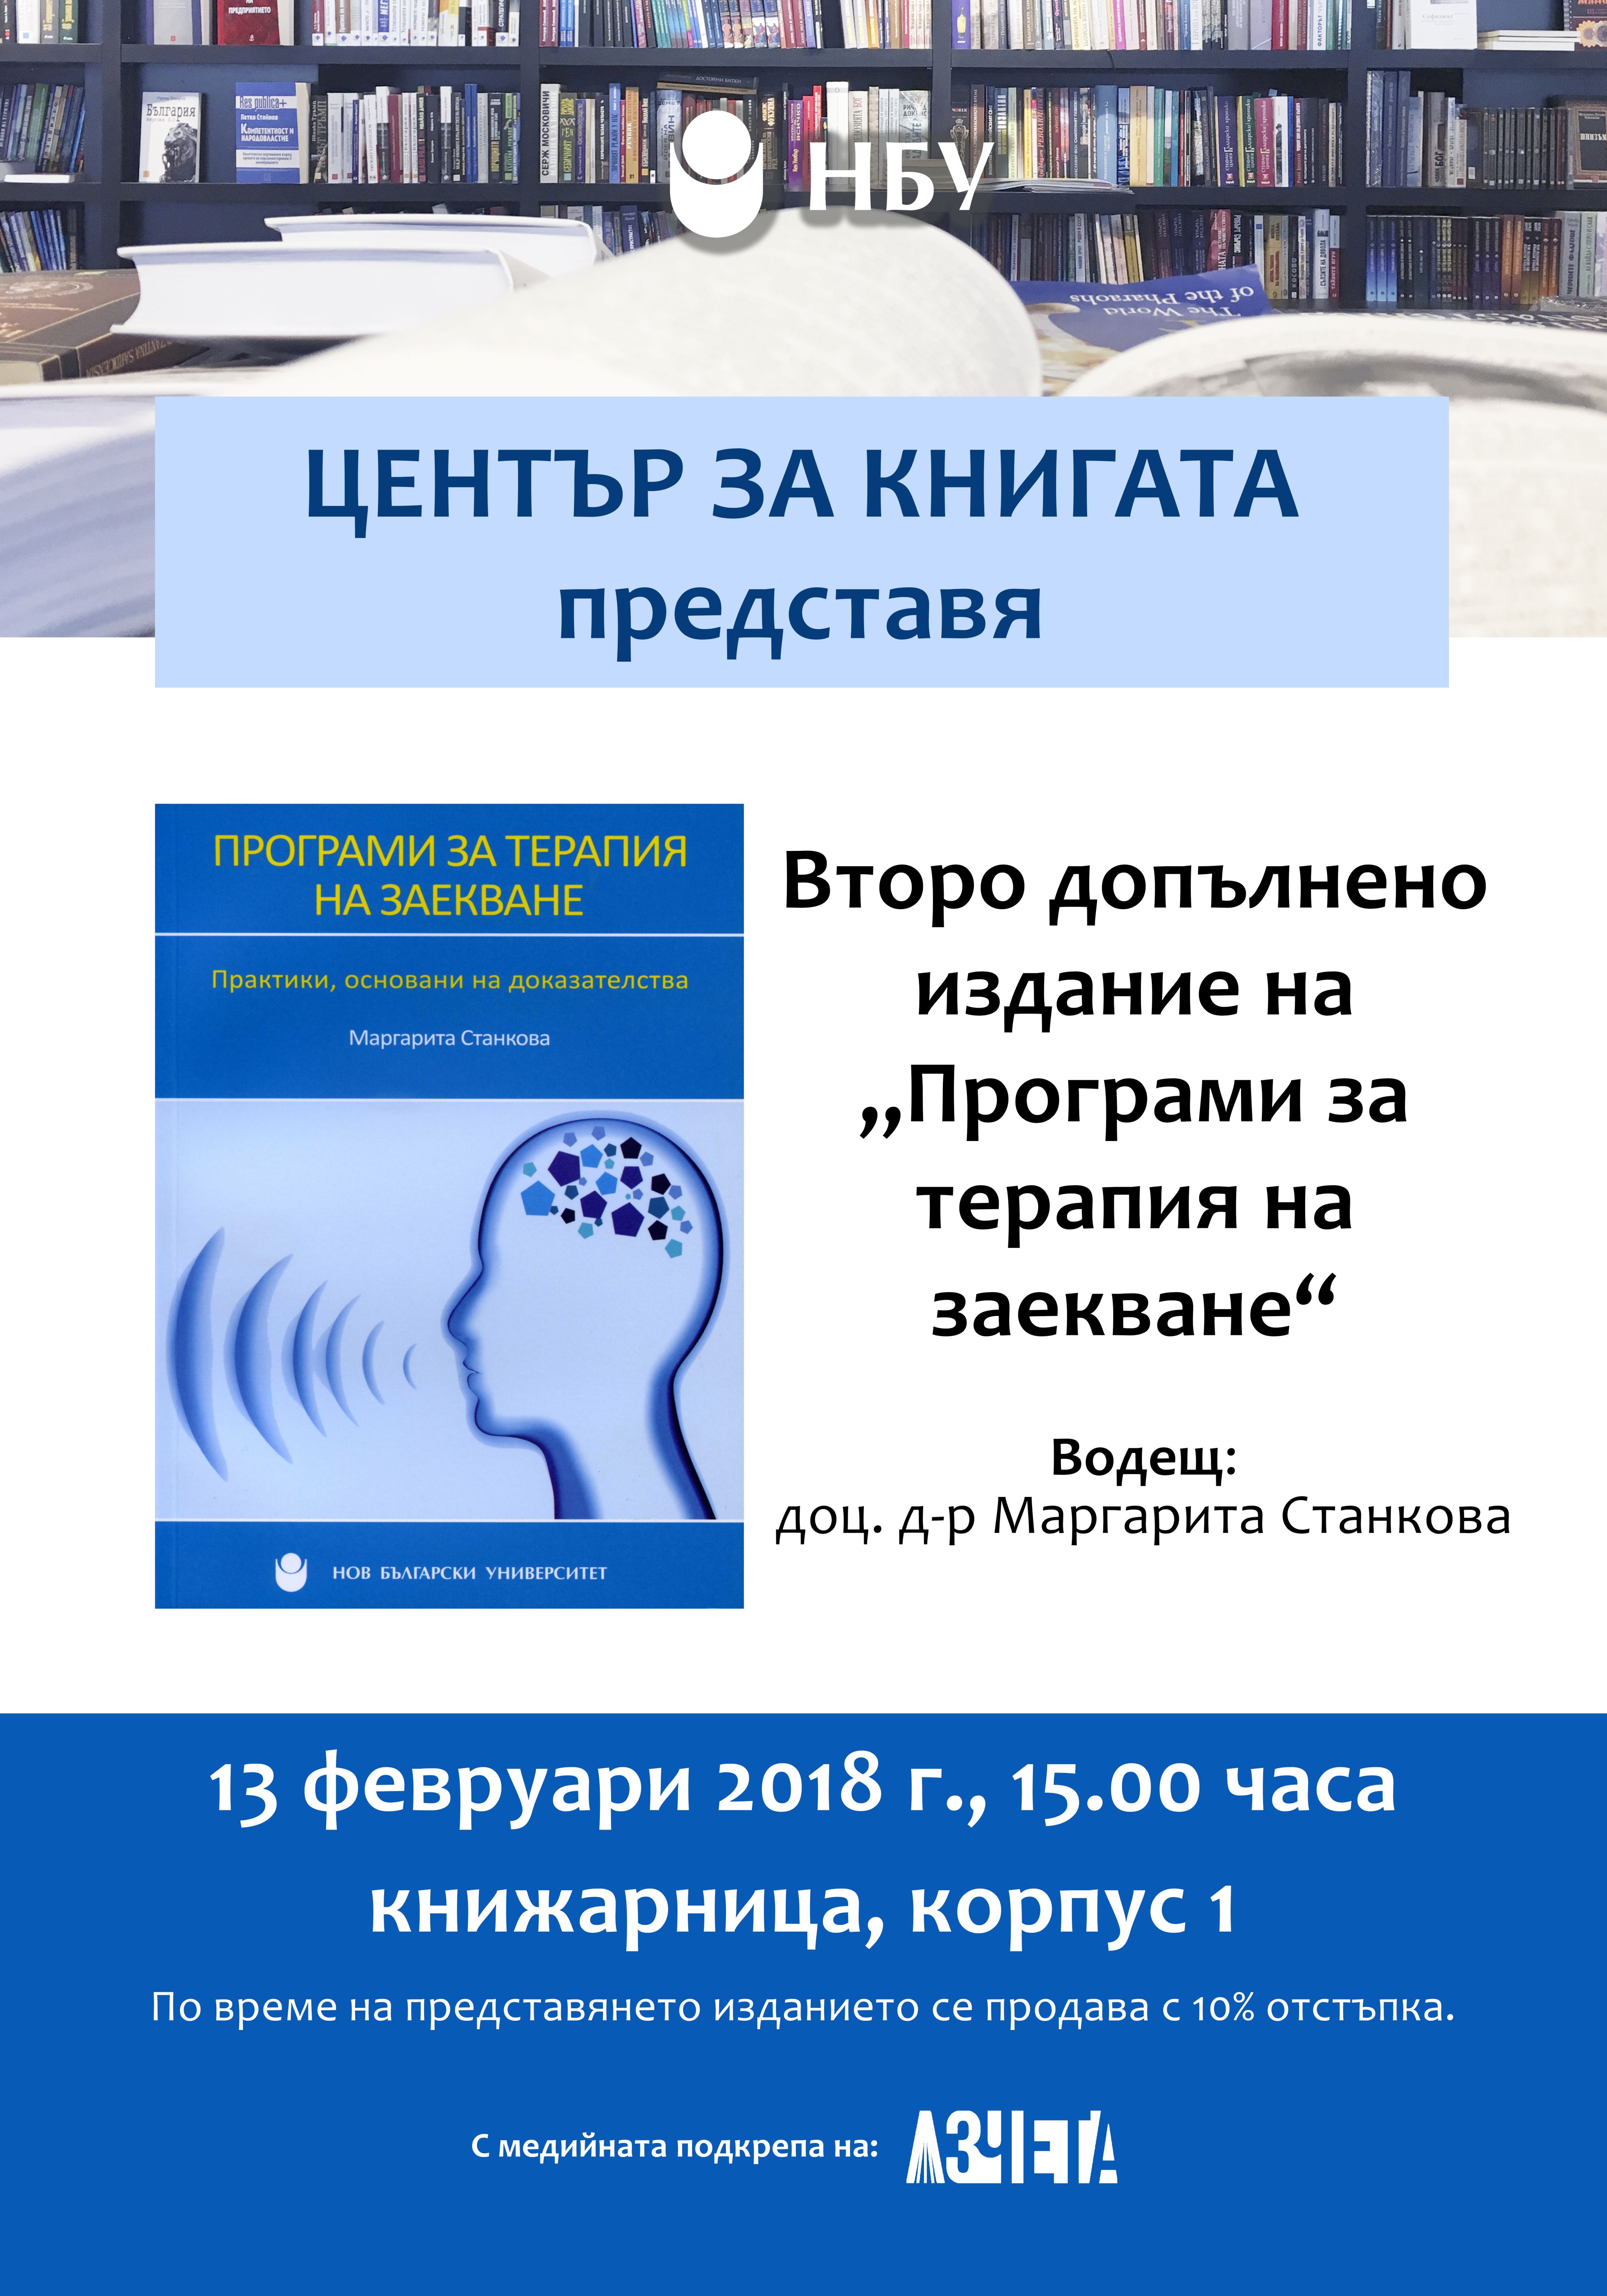 Представяне на второ допълнено издание на „Програми за терапия на заекване“ от доц. д-р Маргарита Станкова